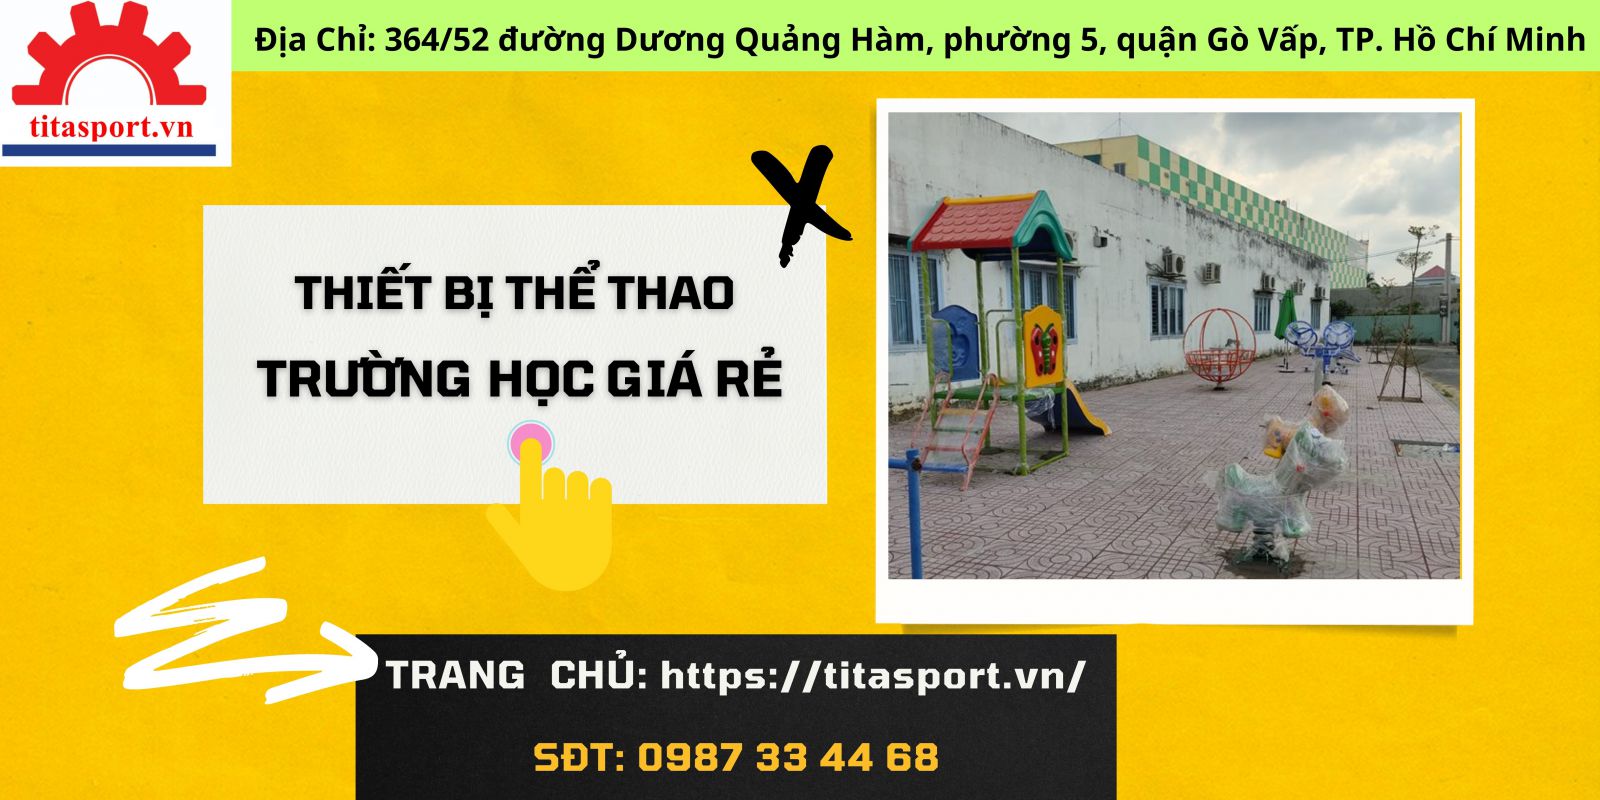 Giới thiệu các thiết bị thể thao trường học giá rẻ tại Phú Lộc Phát 